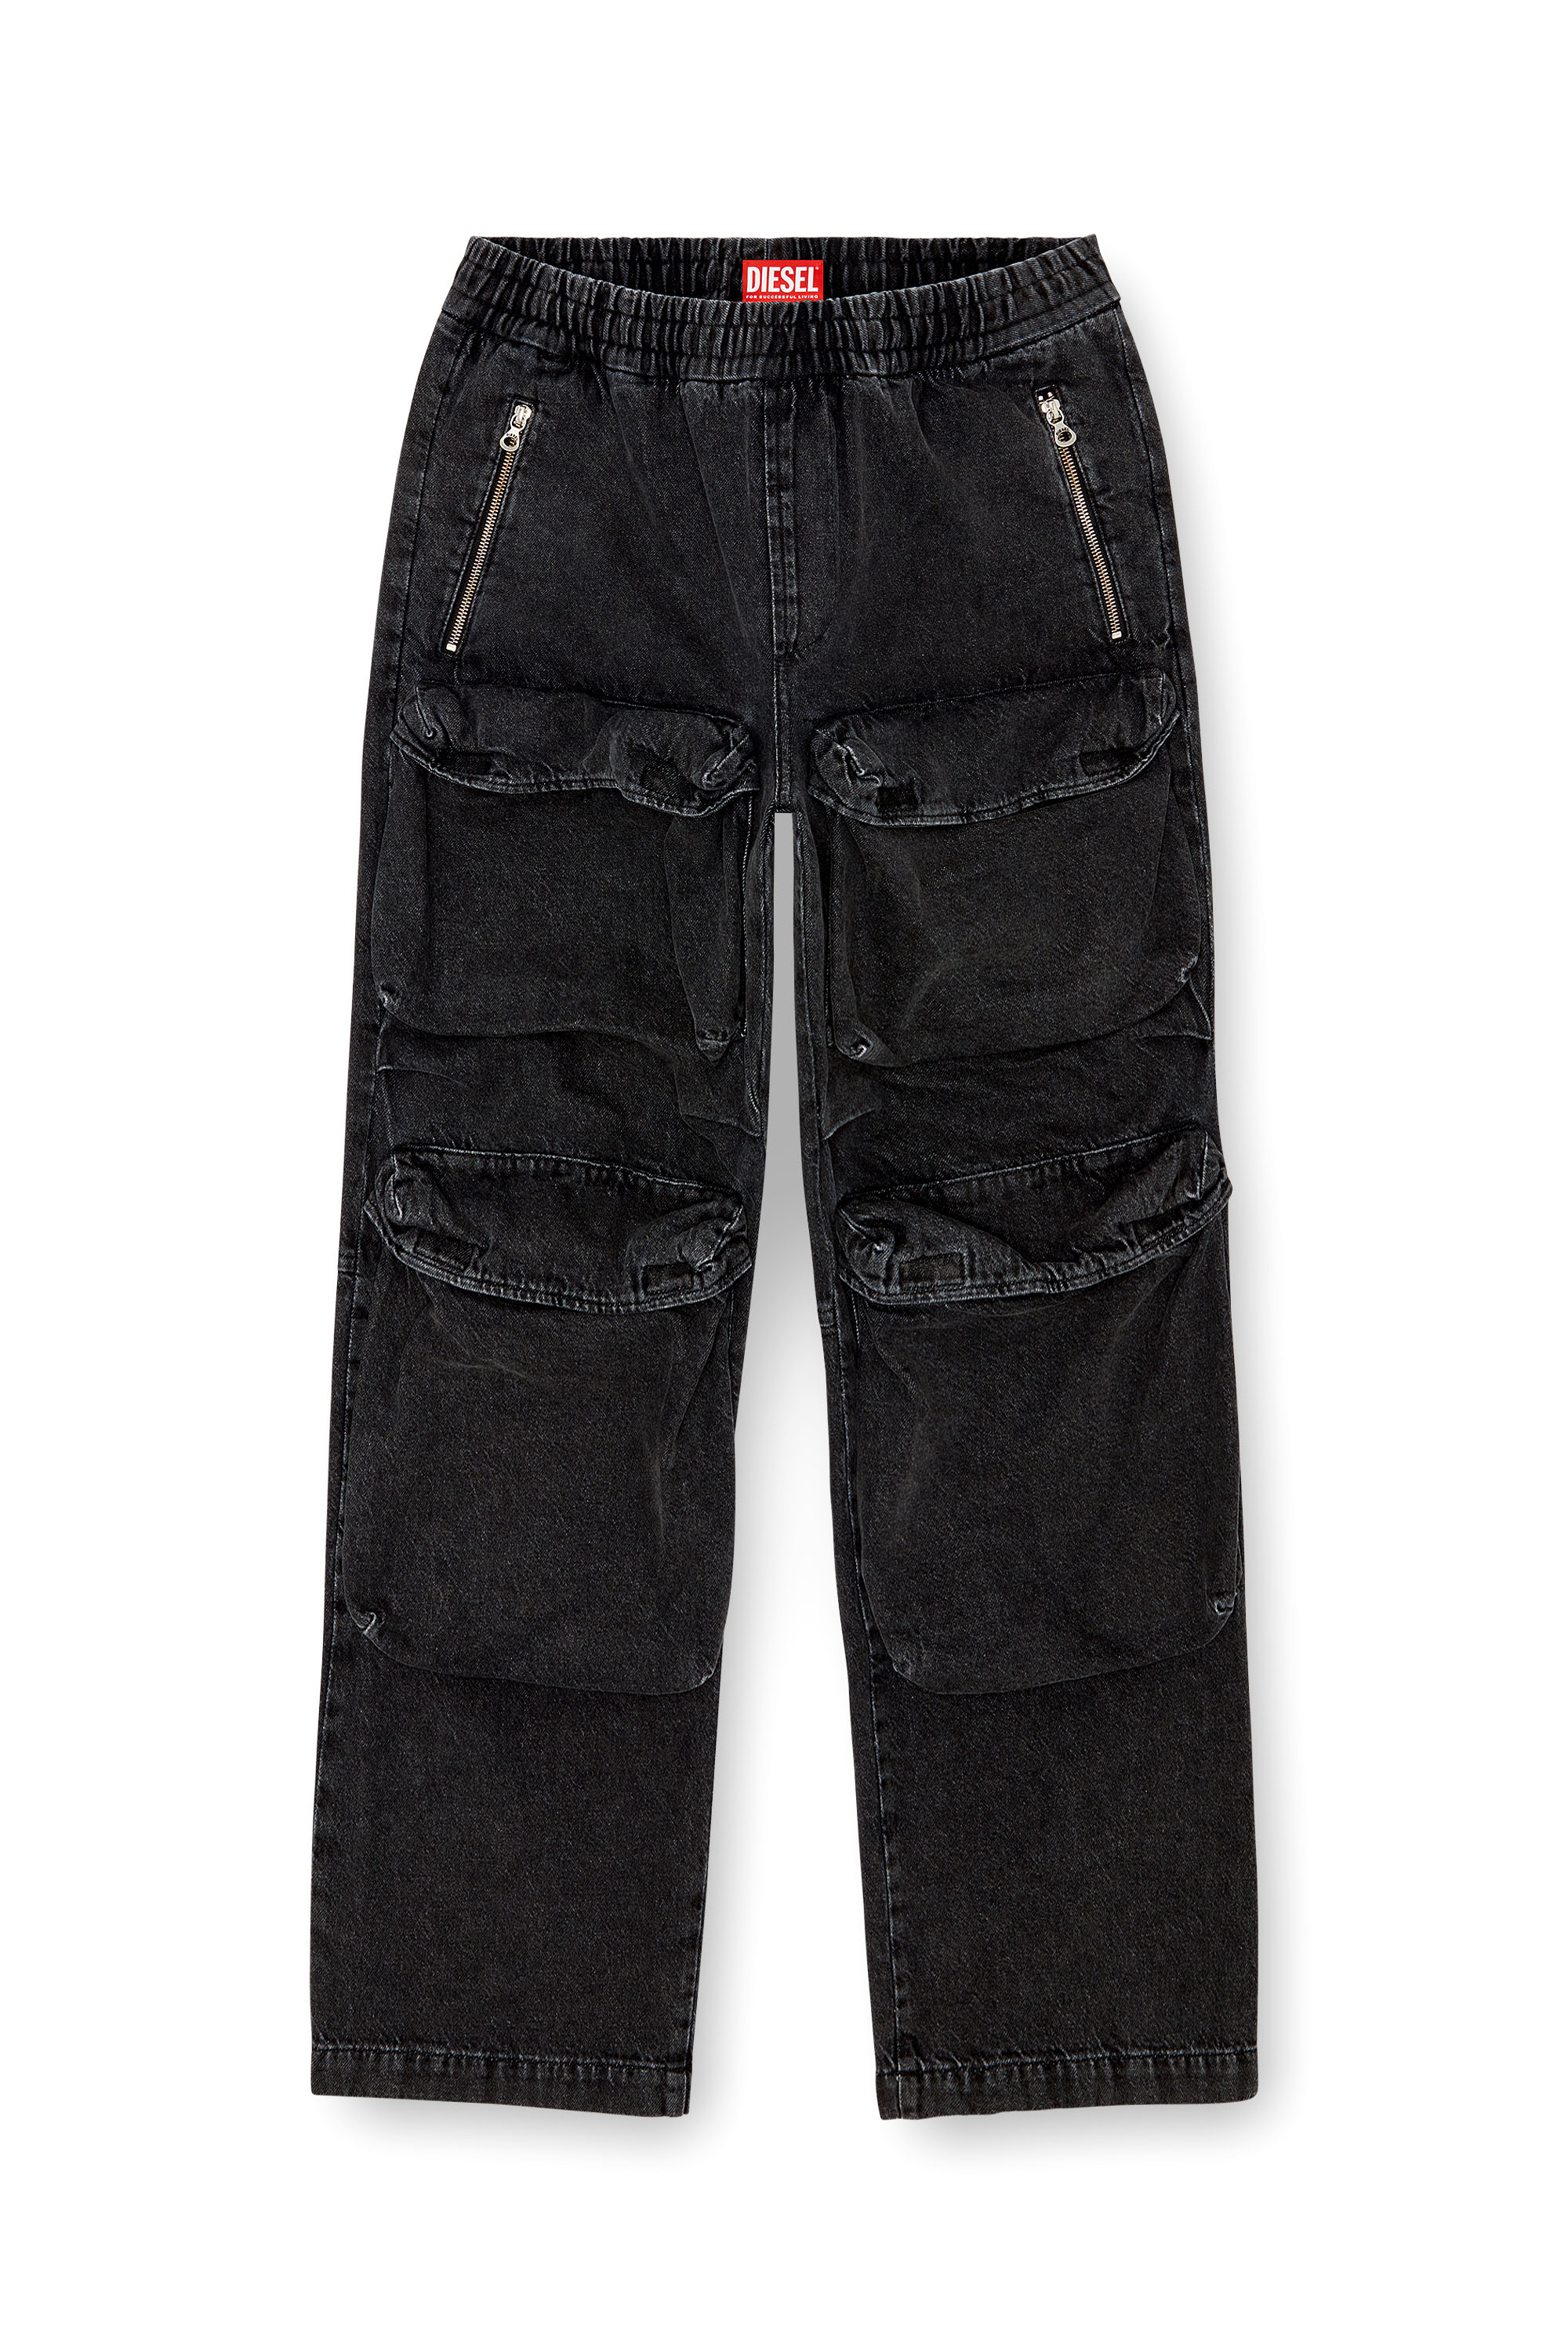 Diesel - Straight Jeans D-Baertson 0CBDH, Hombre Straight Jeans - D-Baertson in Negro - Image 5